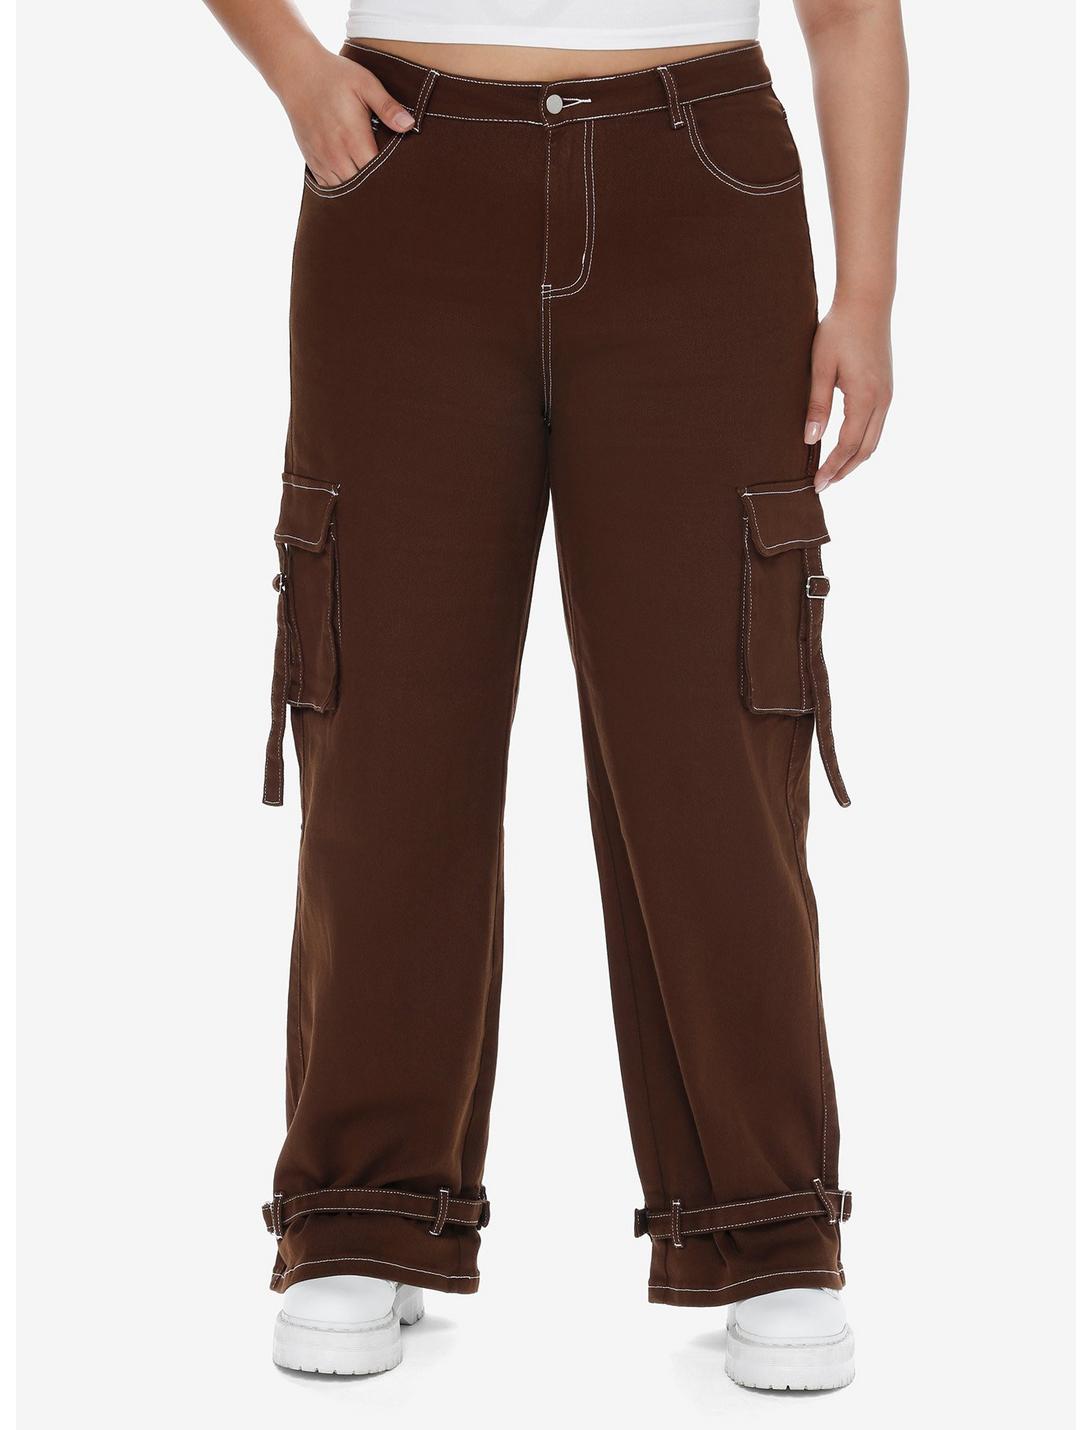 Brown Contrast Stitch Strap Carpenter Pants Plus Size, BROWN, hi-res